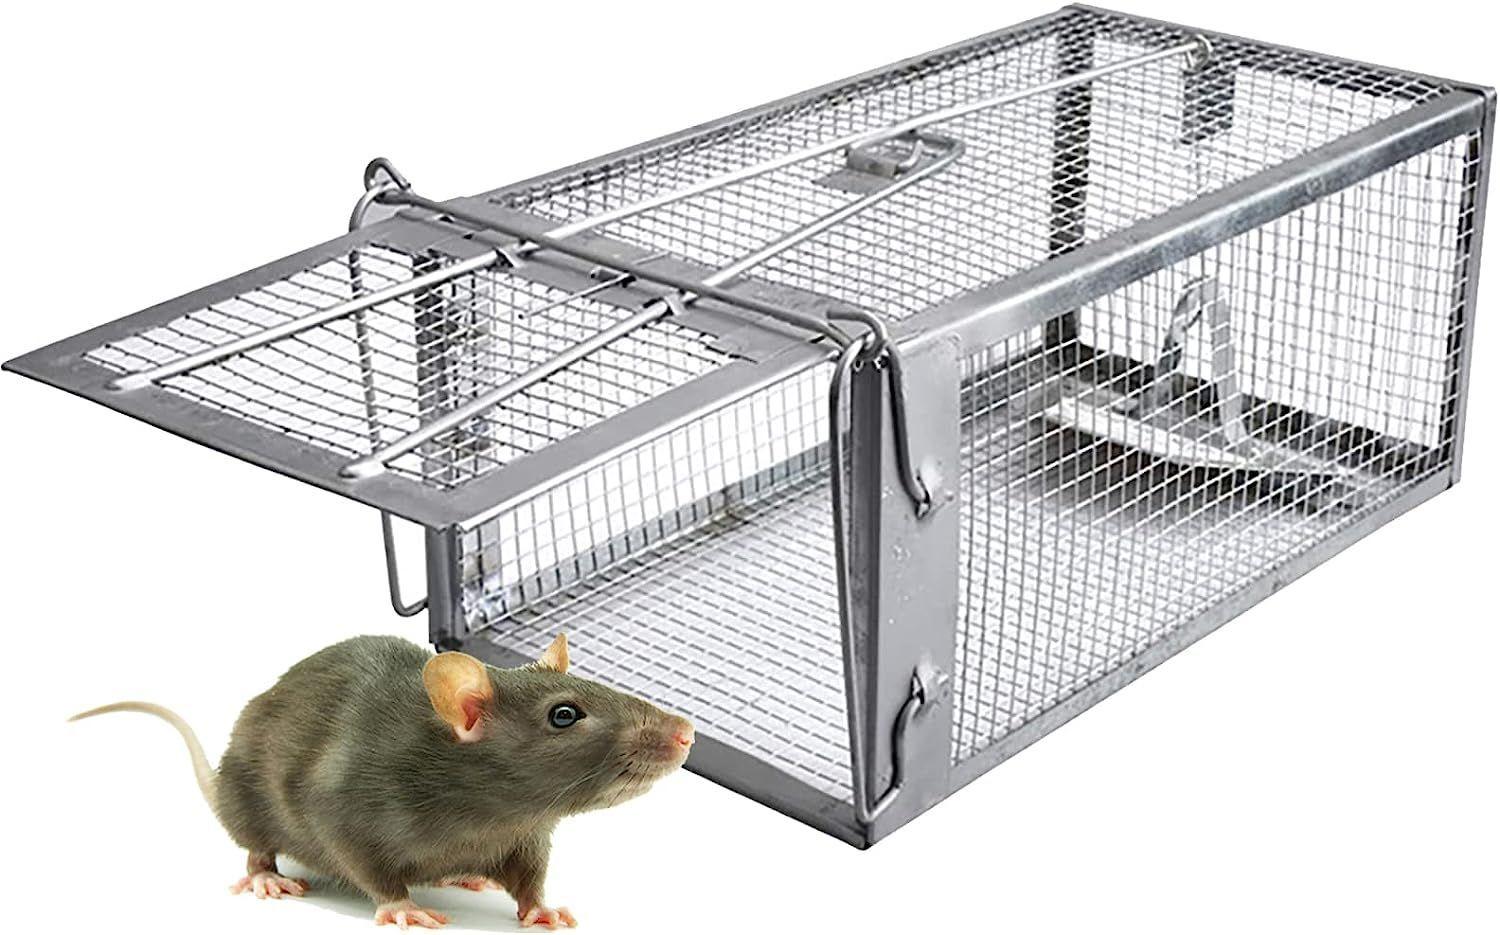 W-B PièGe à Souris, Humain PièGes à Rat Cage Convient Aux Souris